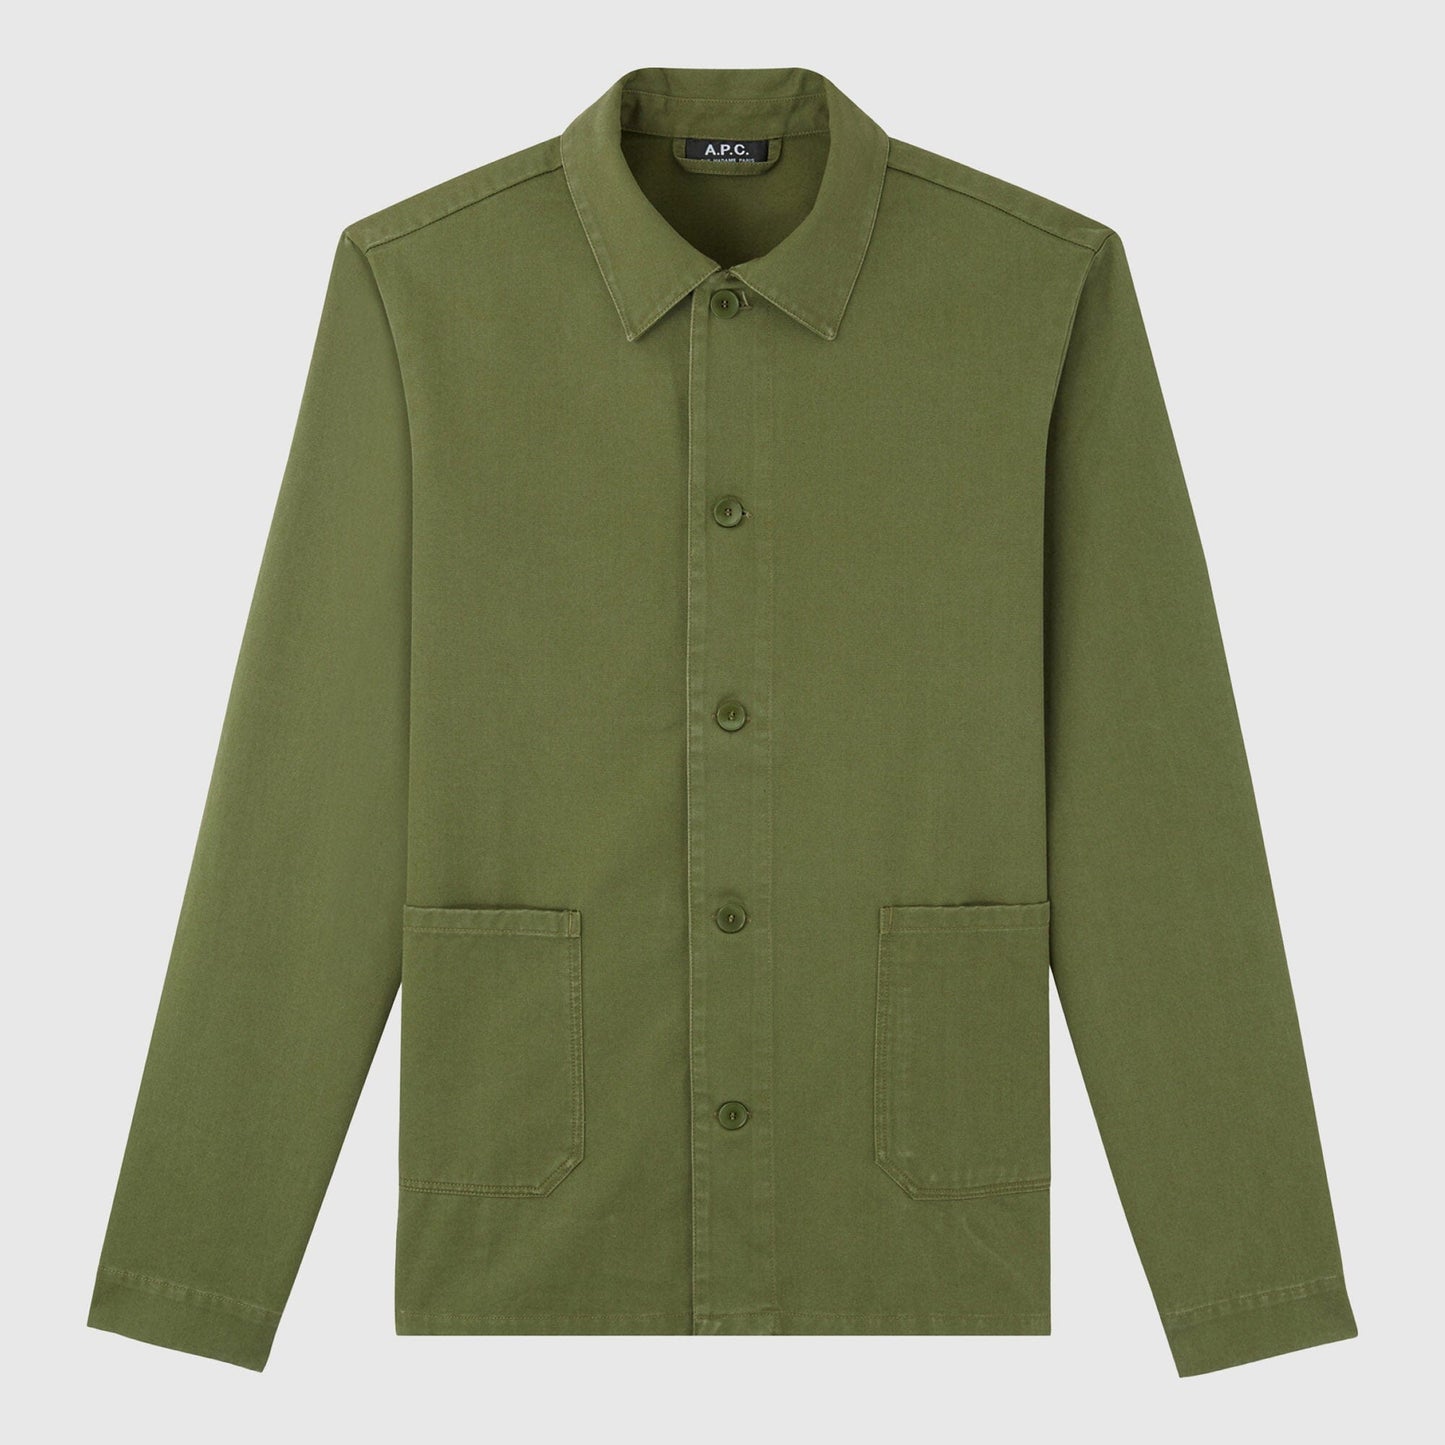 A.P.C Kerlouan Jacket - Dark Green Jacket A.P.C 